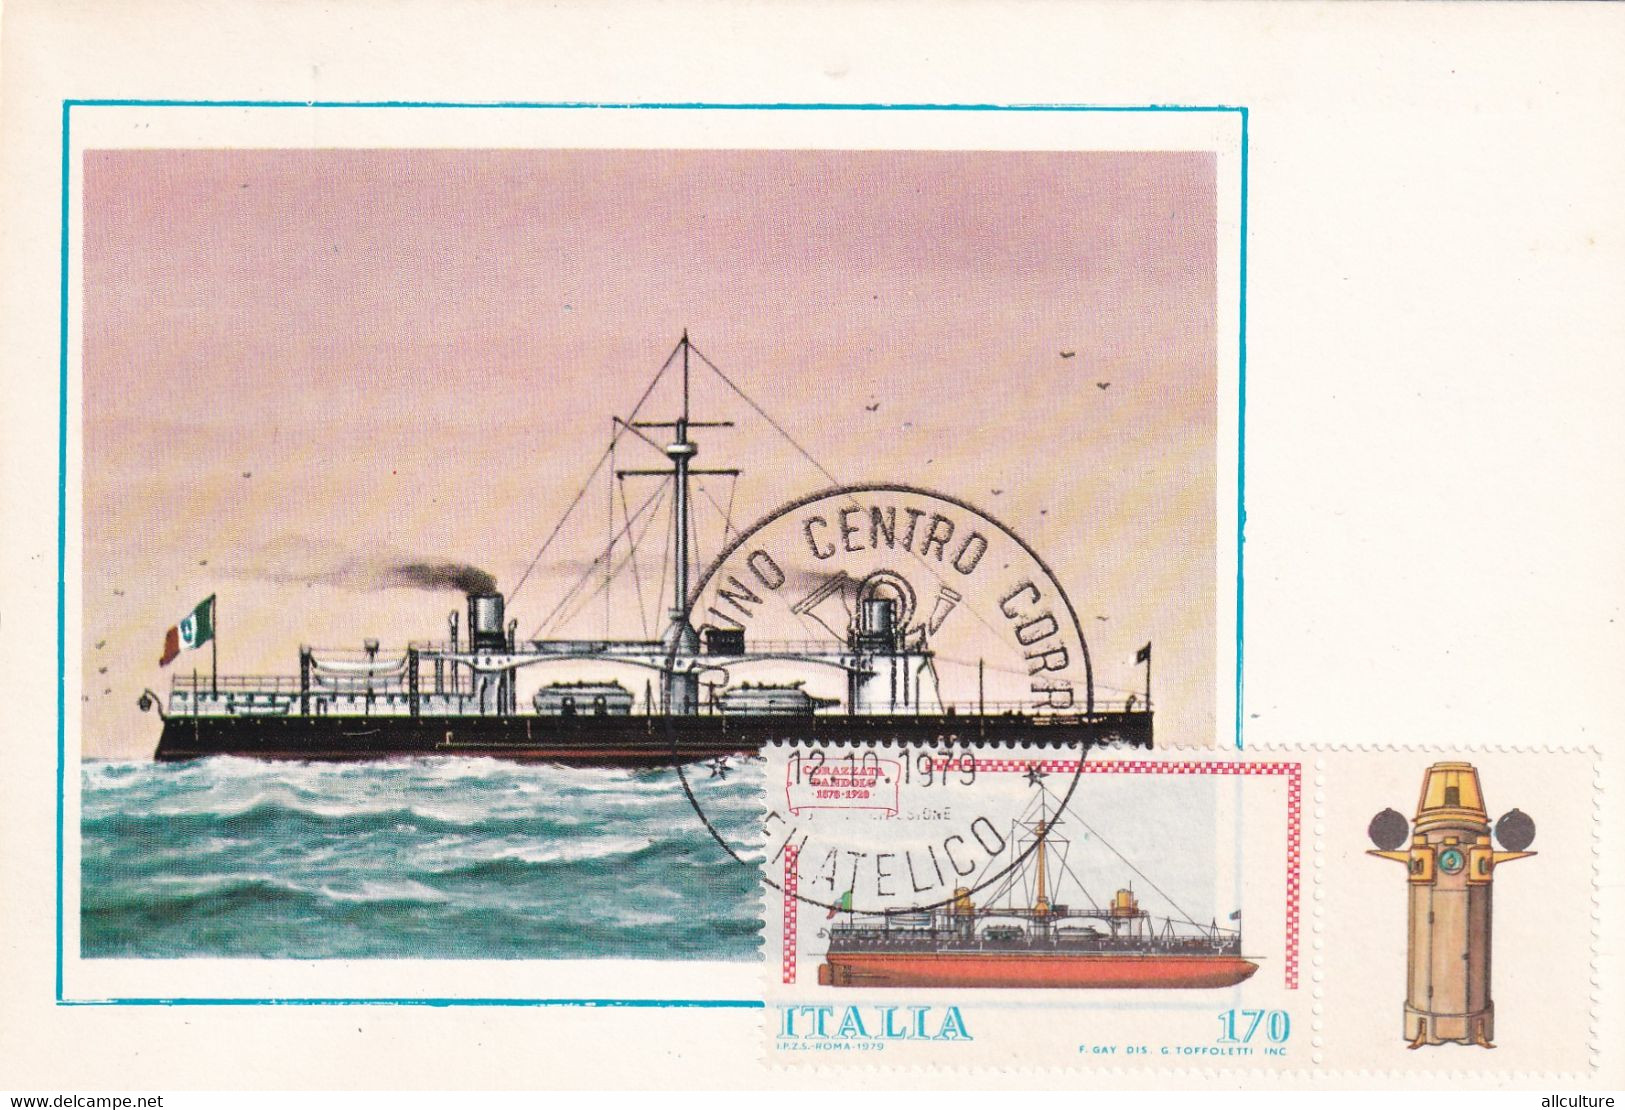 A10857- NAVE CORAZZATA DANDOLO 1878-1928 , TORINO ITALIA 1979 MAXIMUM CARD USED STAMP - Cartas Máxima